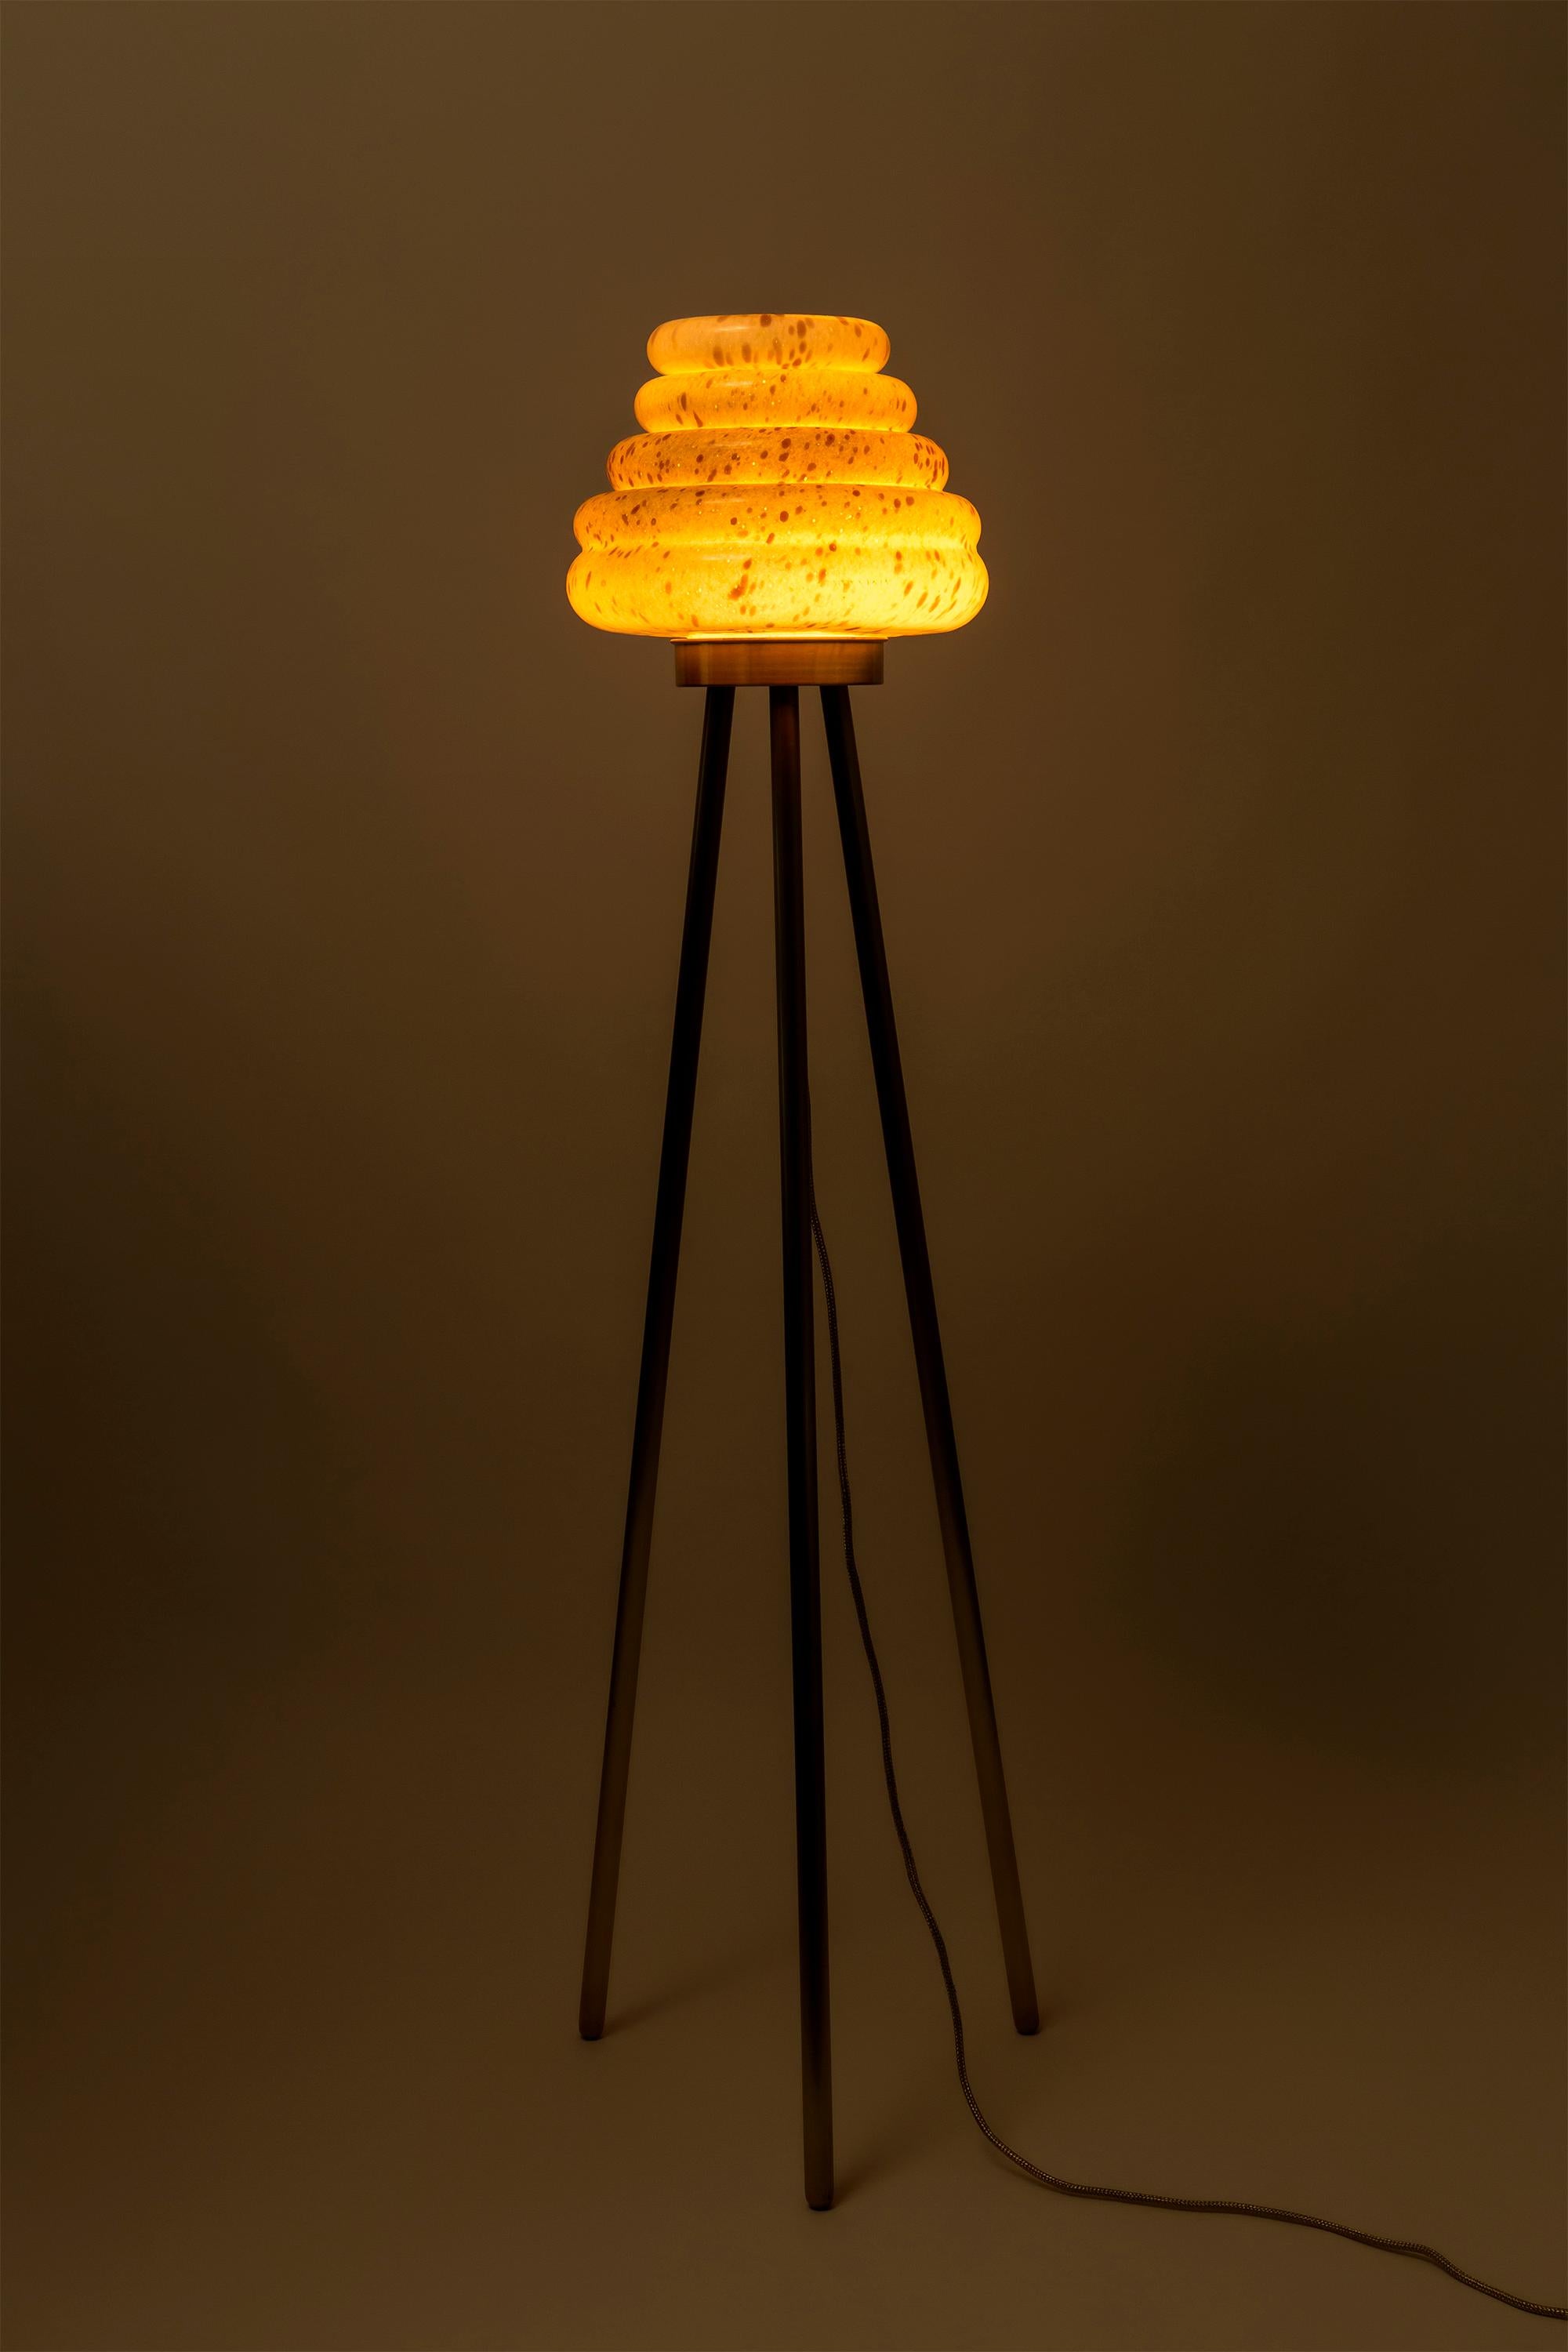 Diese von Bienenstöcken inspirierte Stehlampe besteht aus einem farblich gemischten, mundgeblasenen Glasschirm und verschiedenen Kombinationen von Holzfurnierbeinen und Kupfer. Die zweite Version von Colmena hat einen gepunkteten Glasschirm und